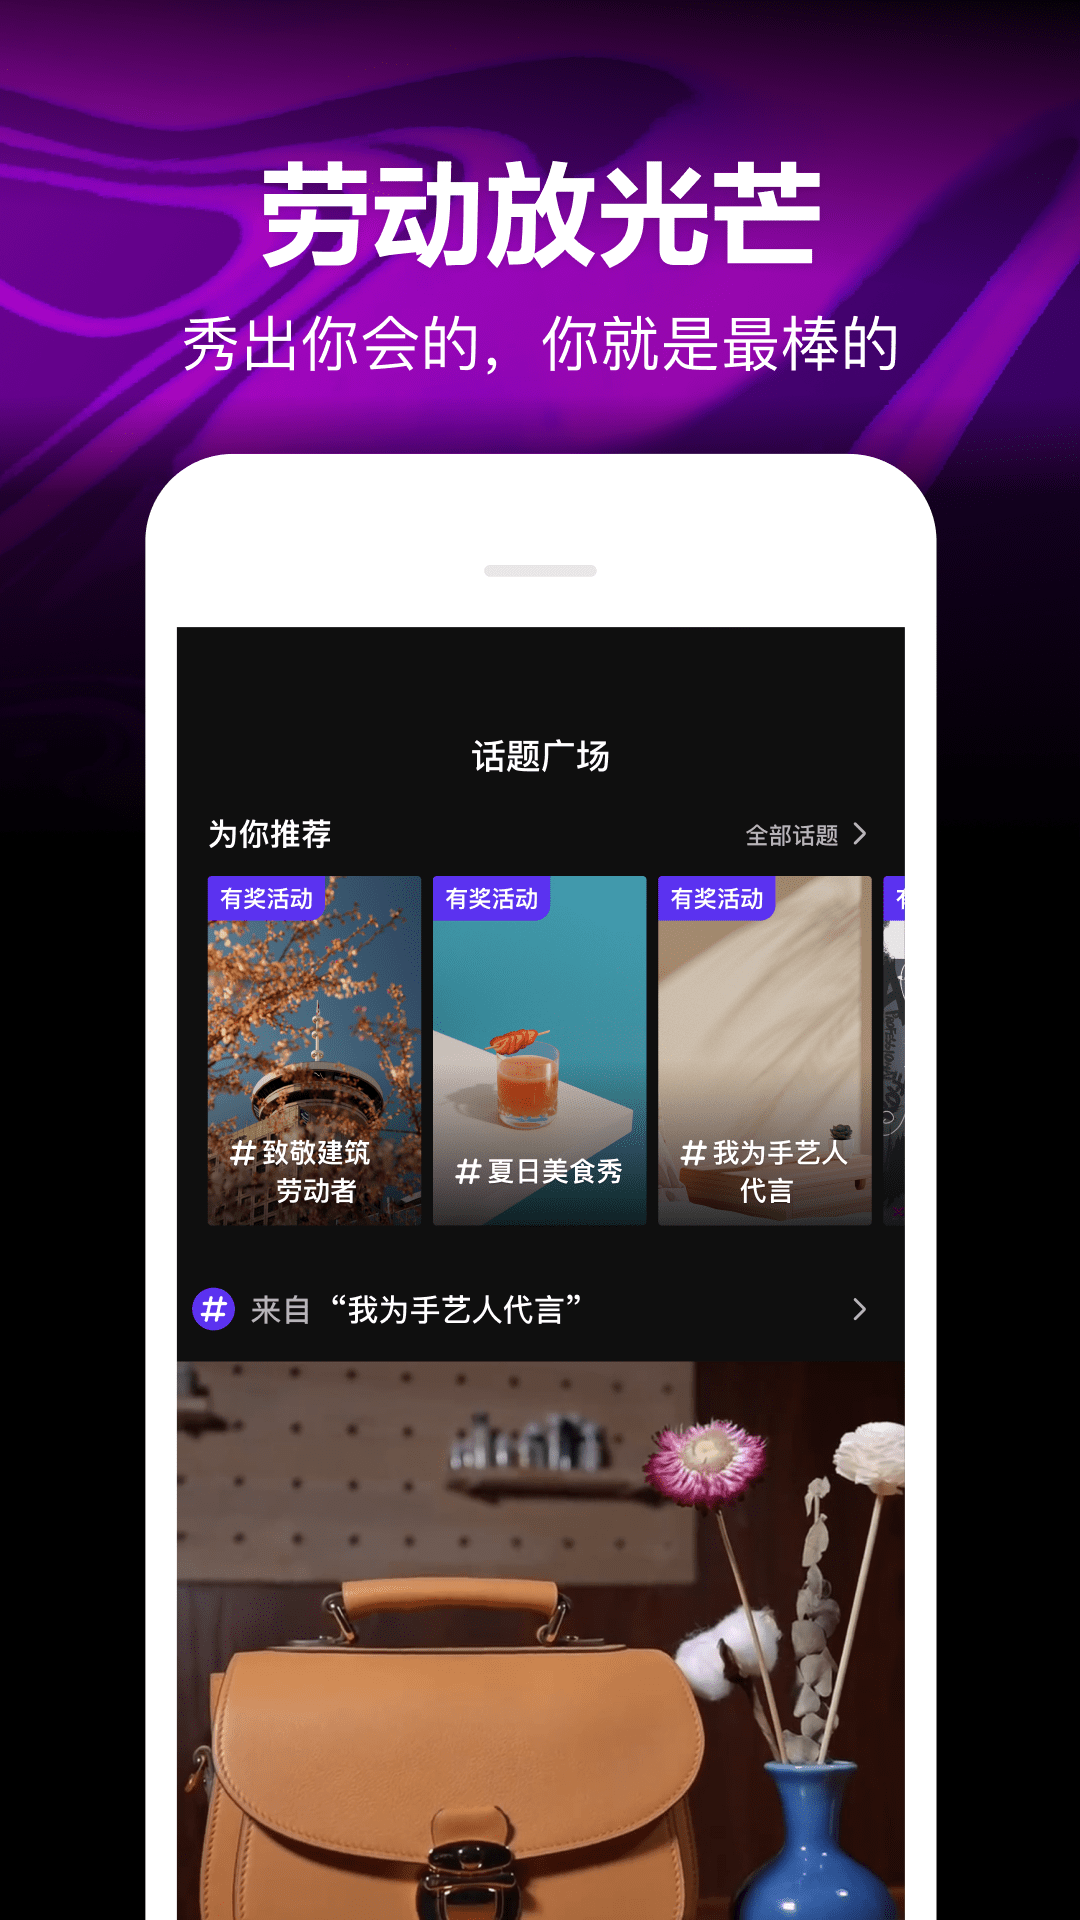 腾讯微视app官方版 V8.102.0.305